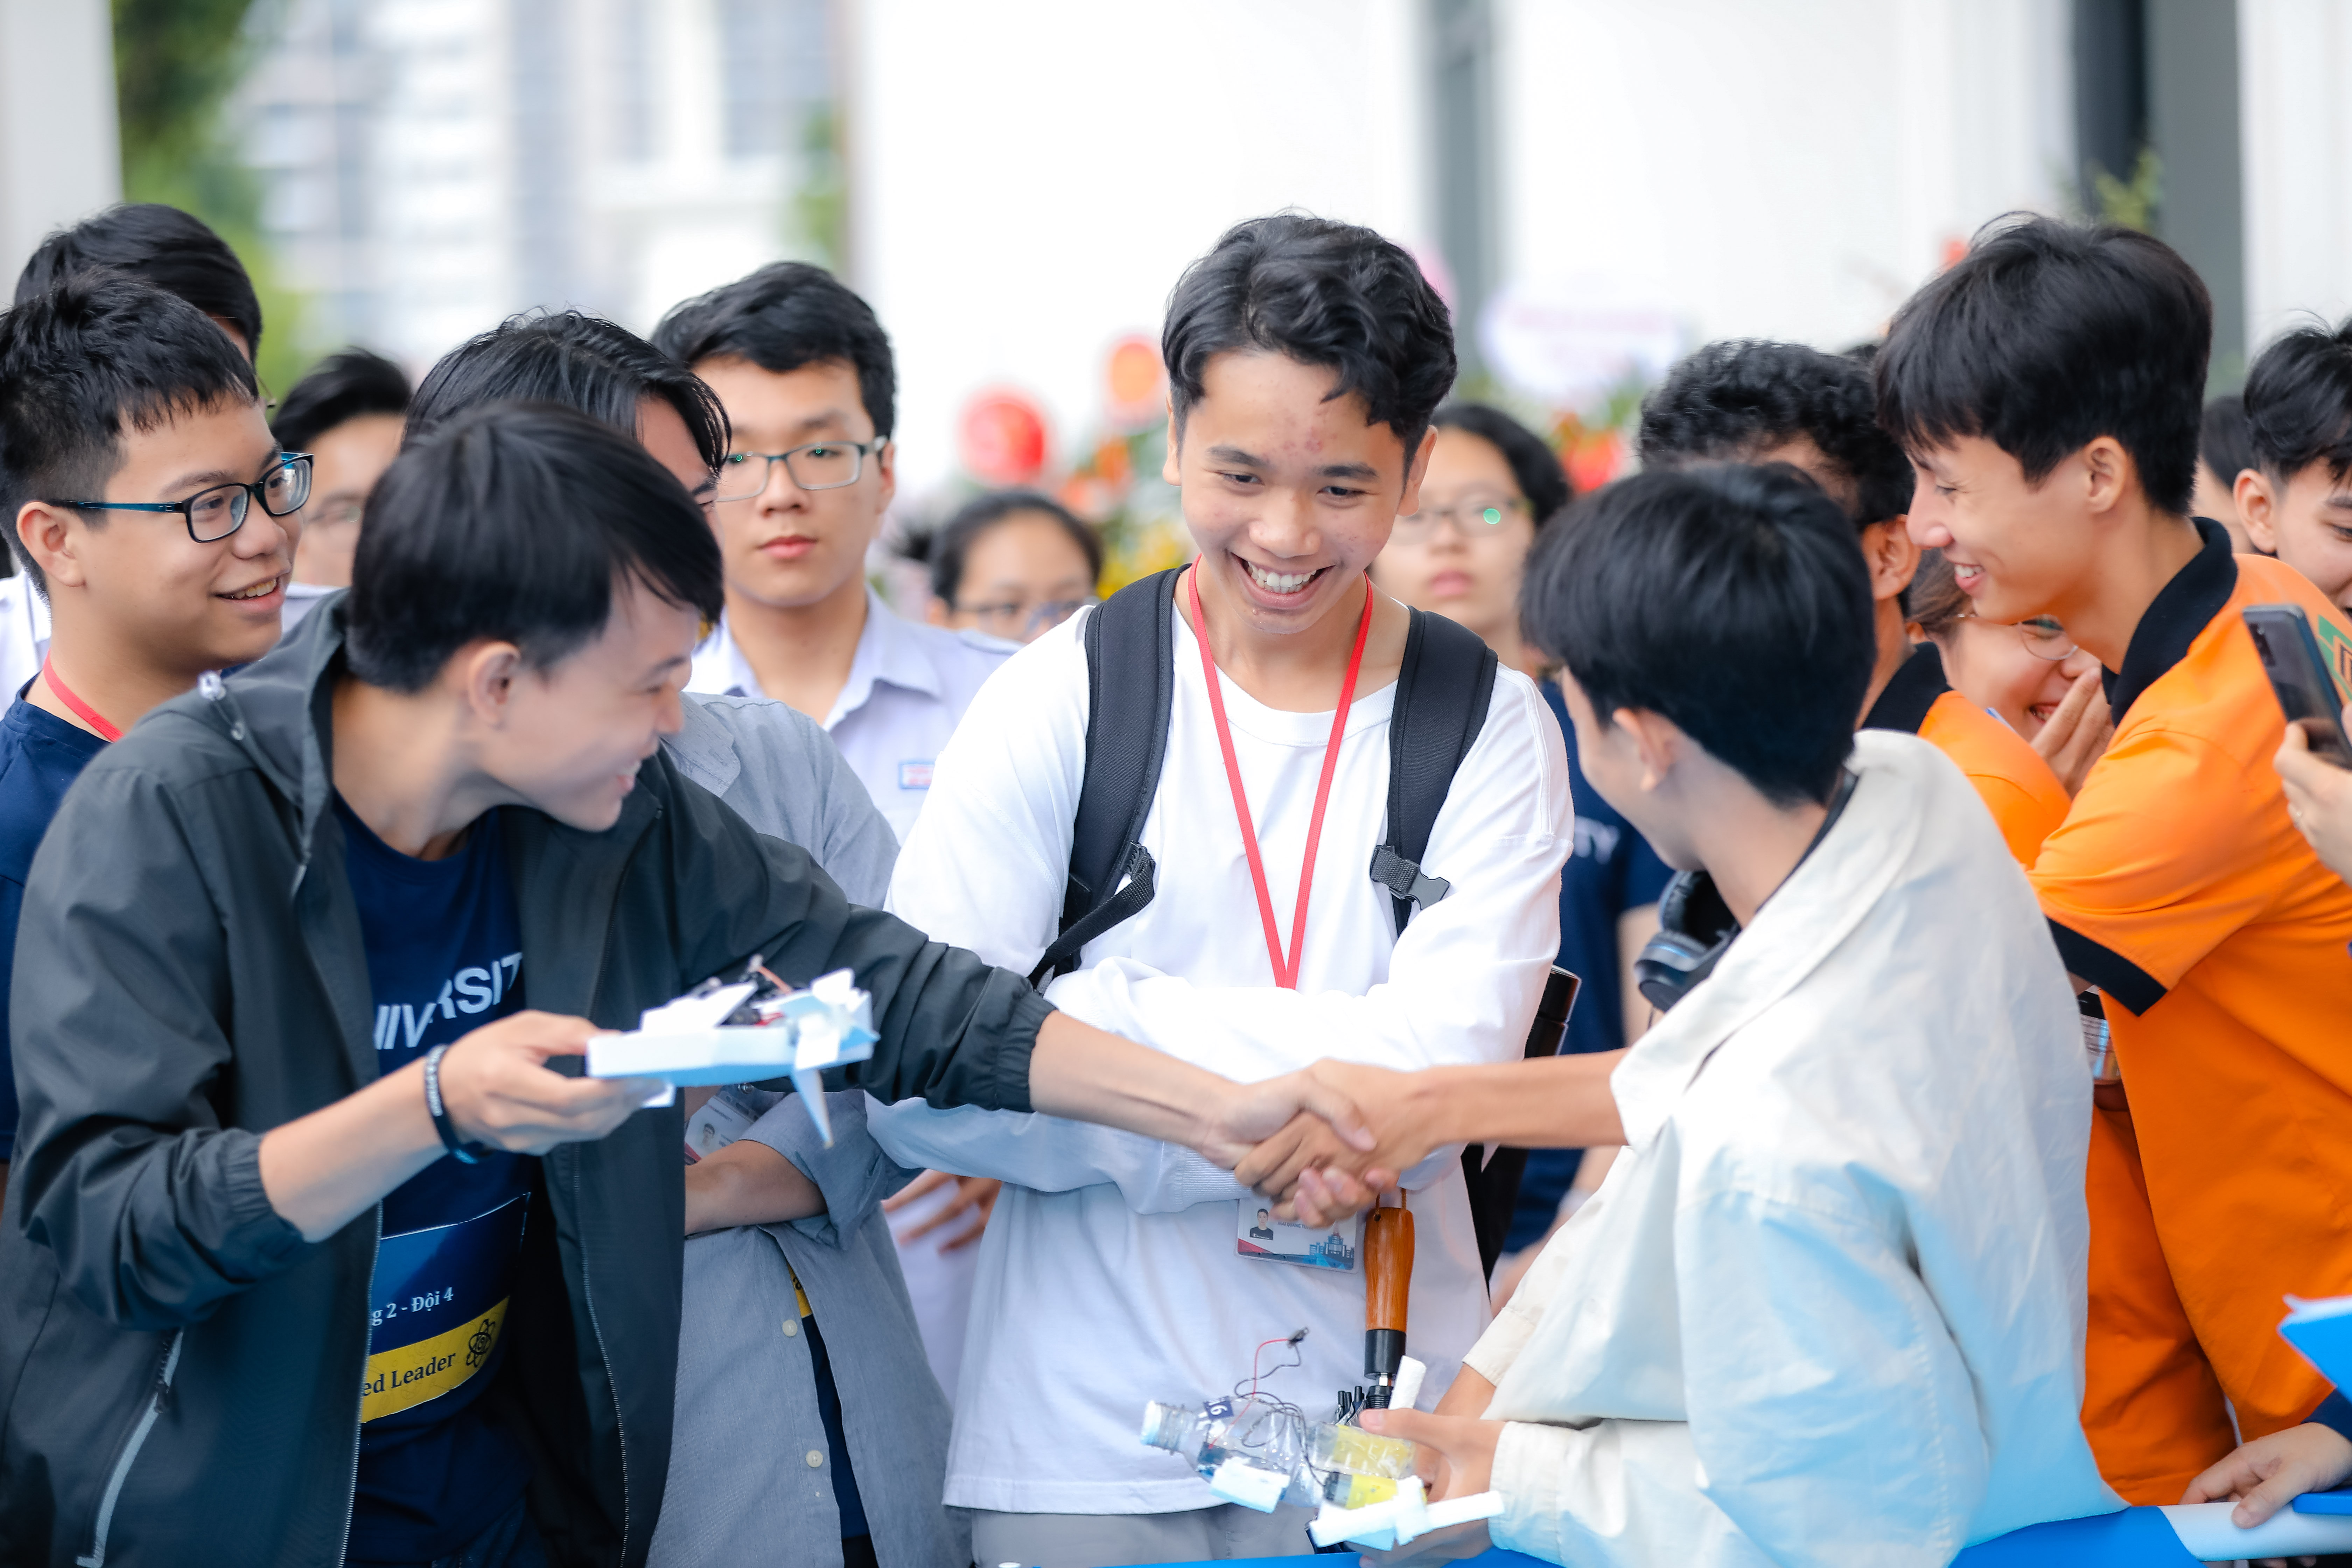 Ngày hội STEME diễn ra tại trường ĐH VinUni, Hà Nội, 18/10/2020, là một hoạt động trong khuôn khổ Chương trình Hỗ trợ đưa Giáo dục STEM tới học sinh THPT do Vingroup tài trợ. Trong ảnh: Dù thắng hay thua, các đội thi đều vui vẻ bắt tay nhau. Nguồn: BTC